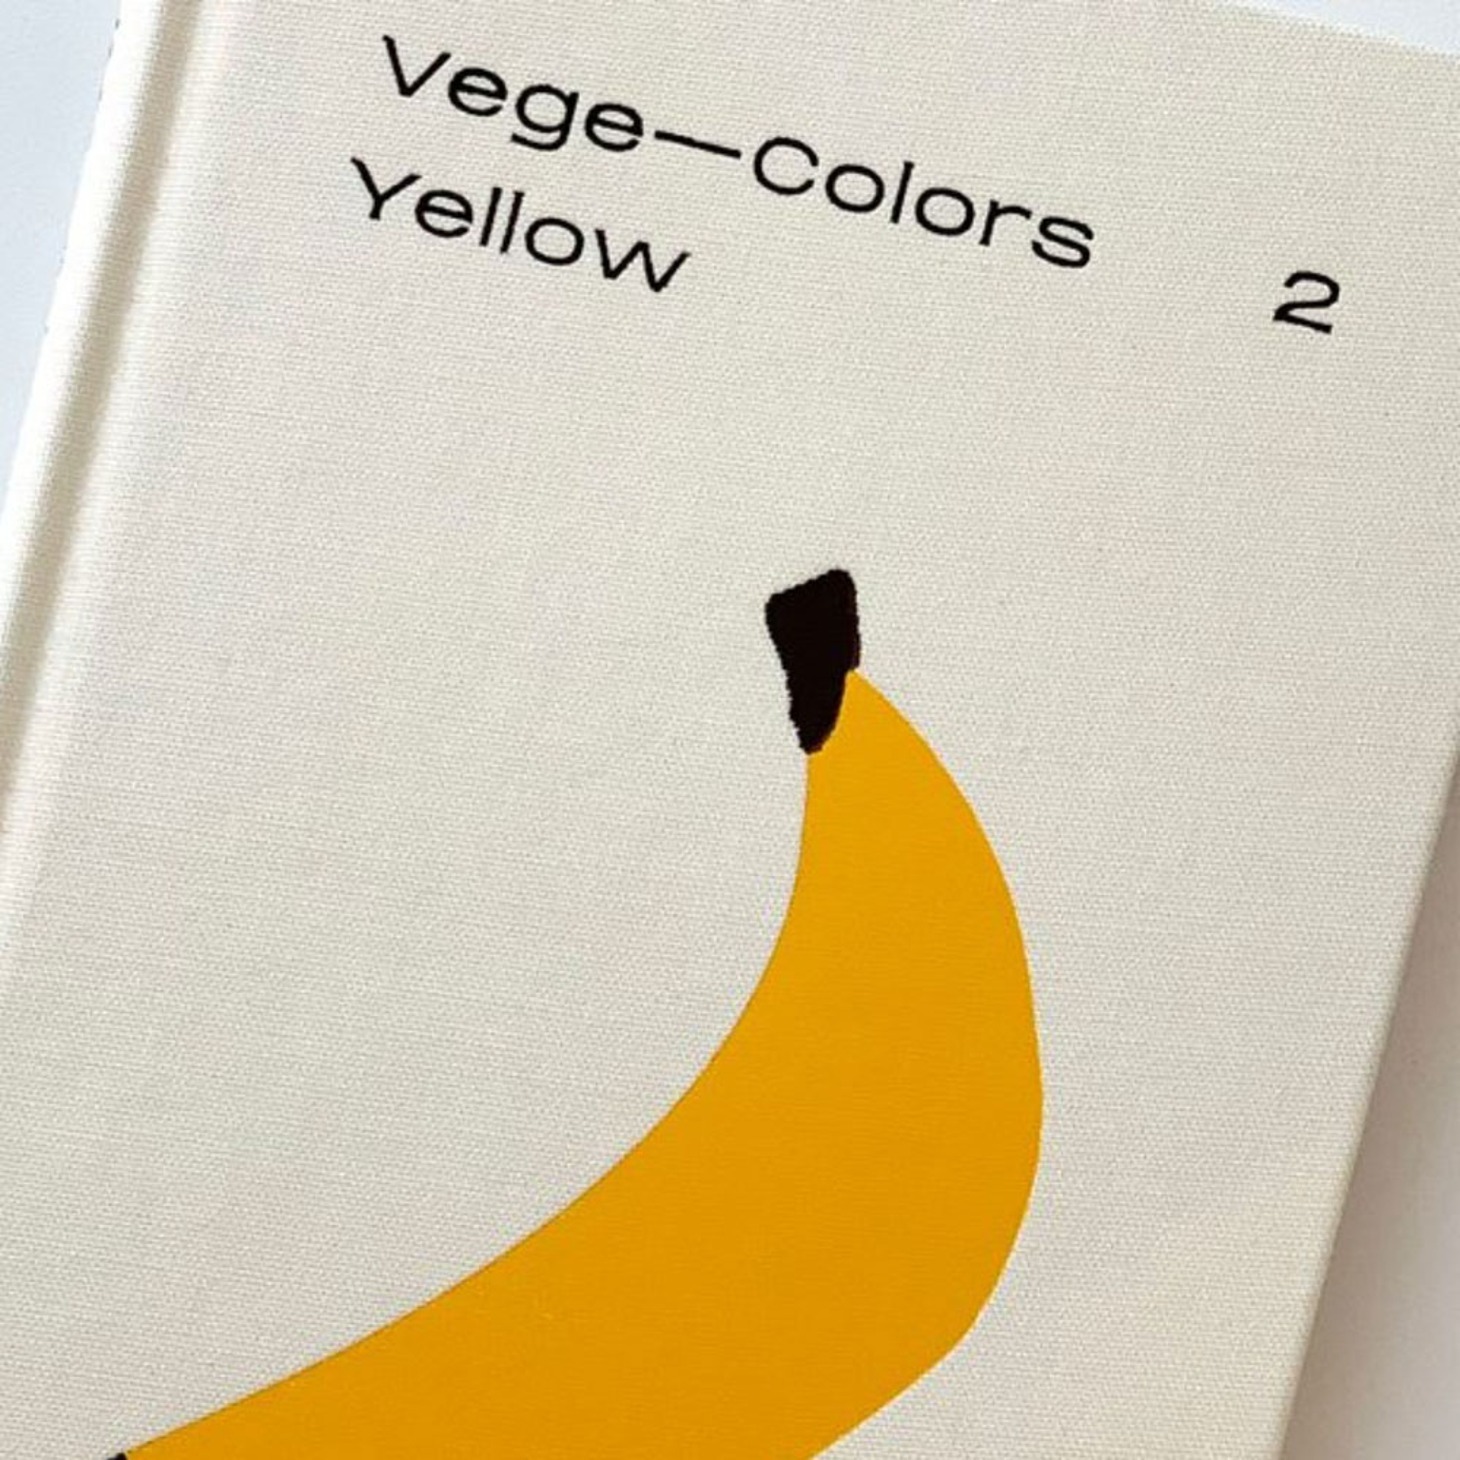 [책빵소] pause_ Yellow vege colors vol.2 book(베지 옐로우 칼라스)